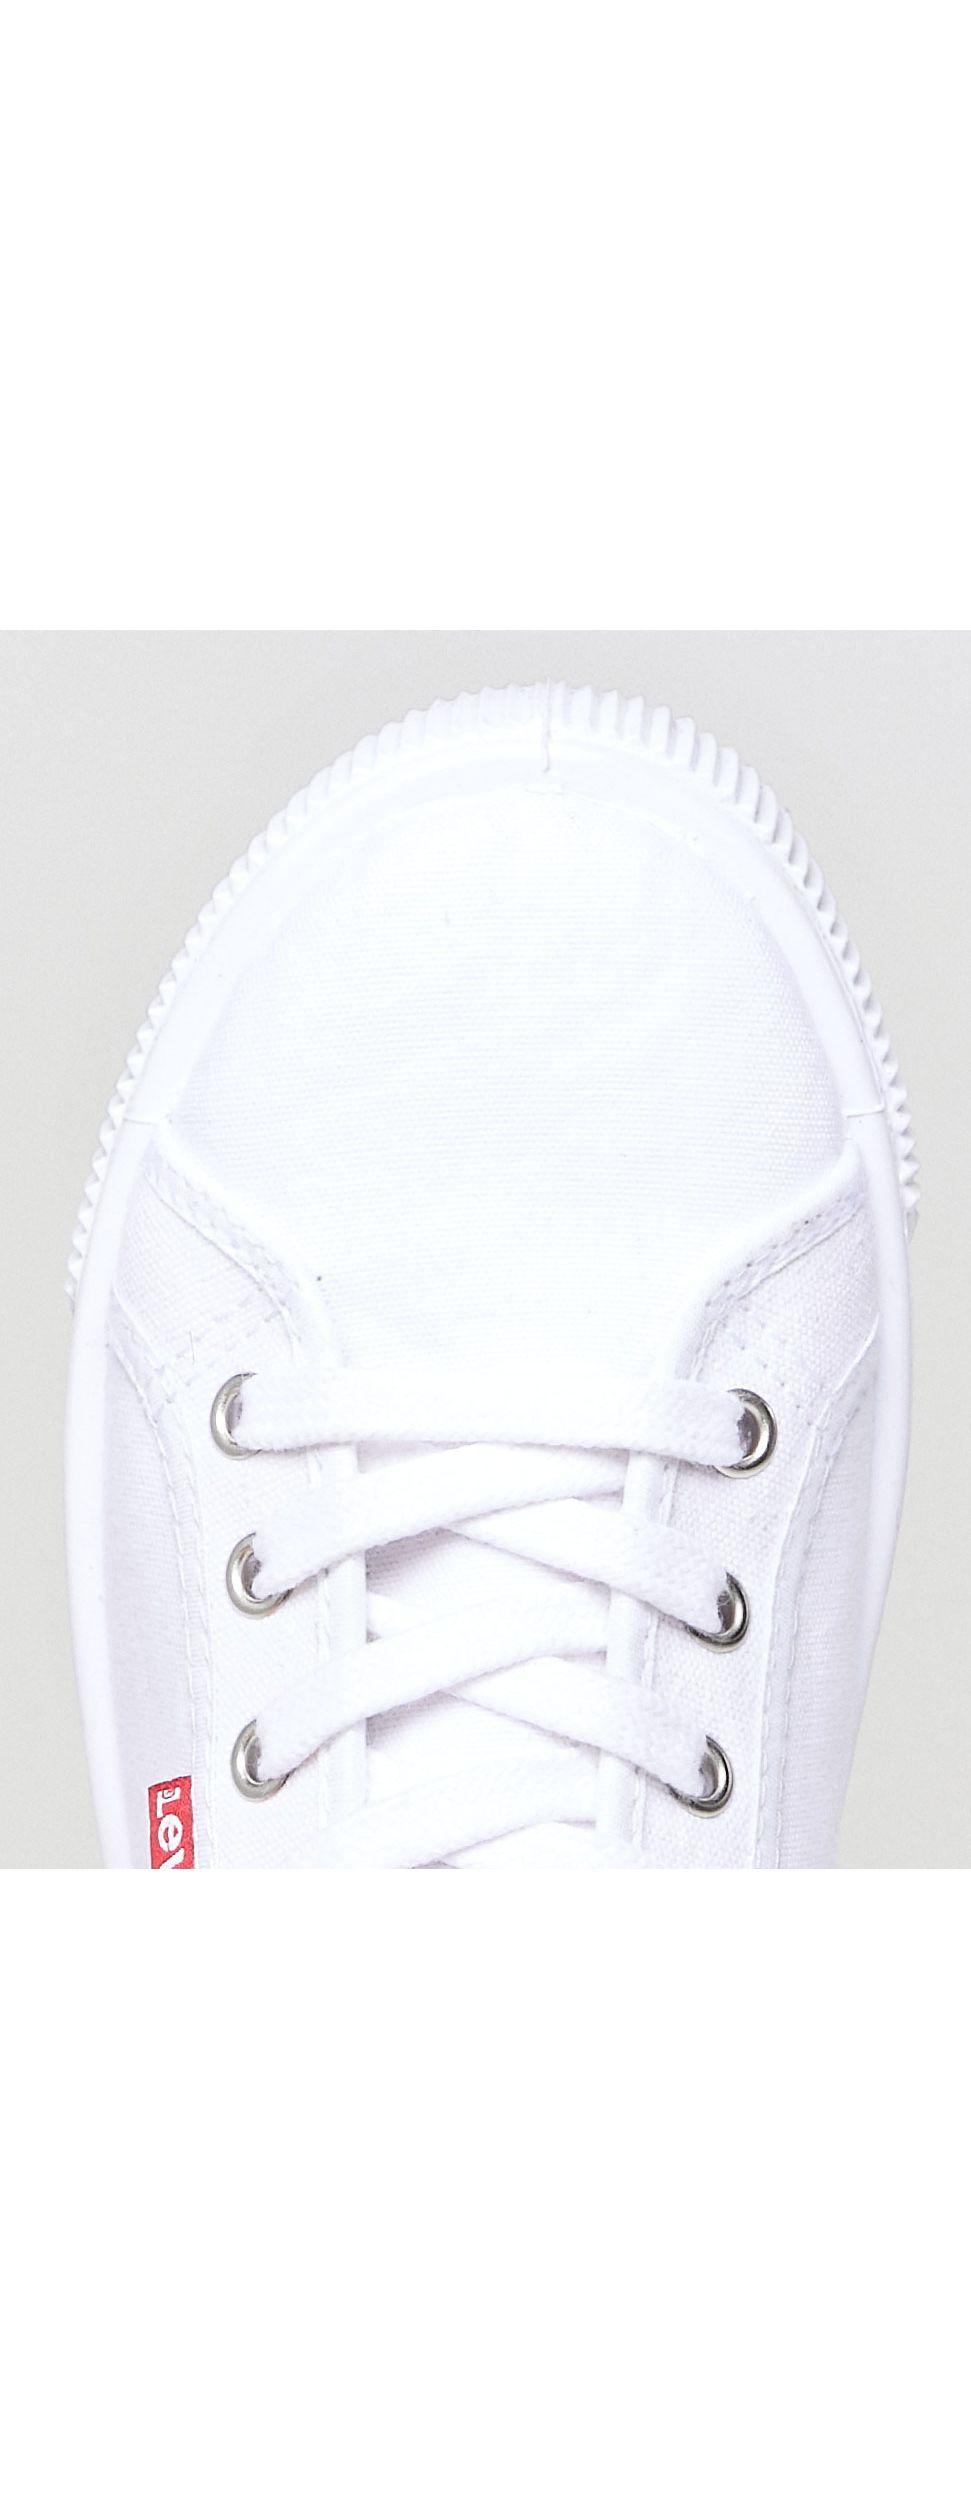 levis white canvas shoes